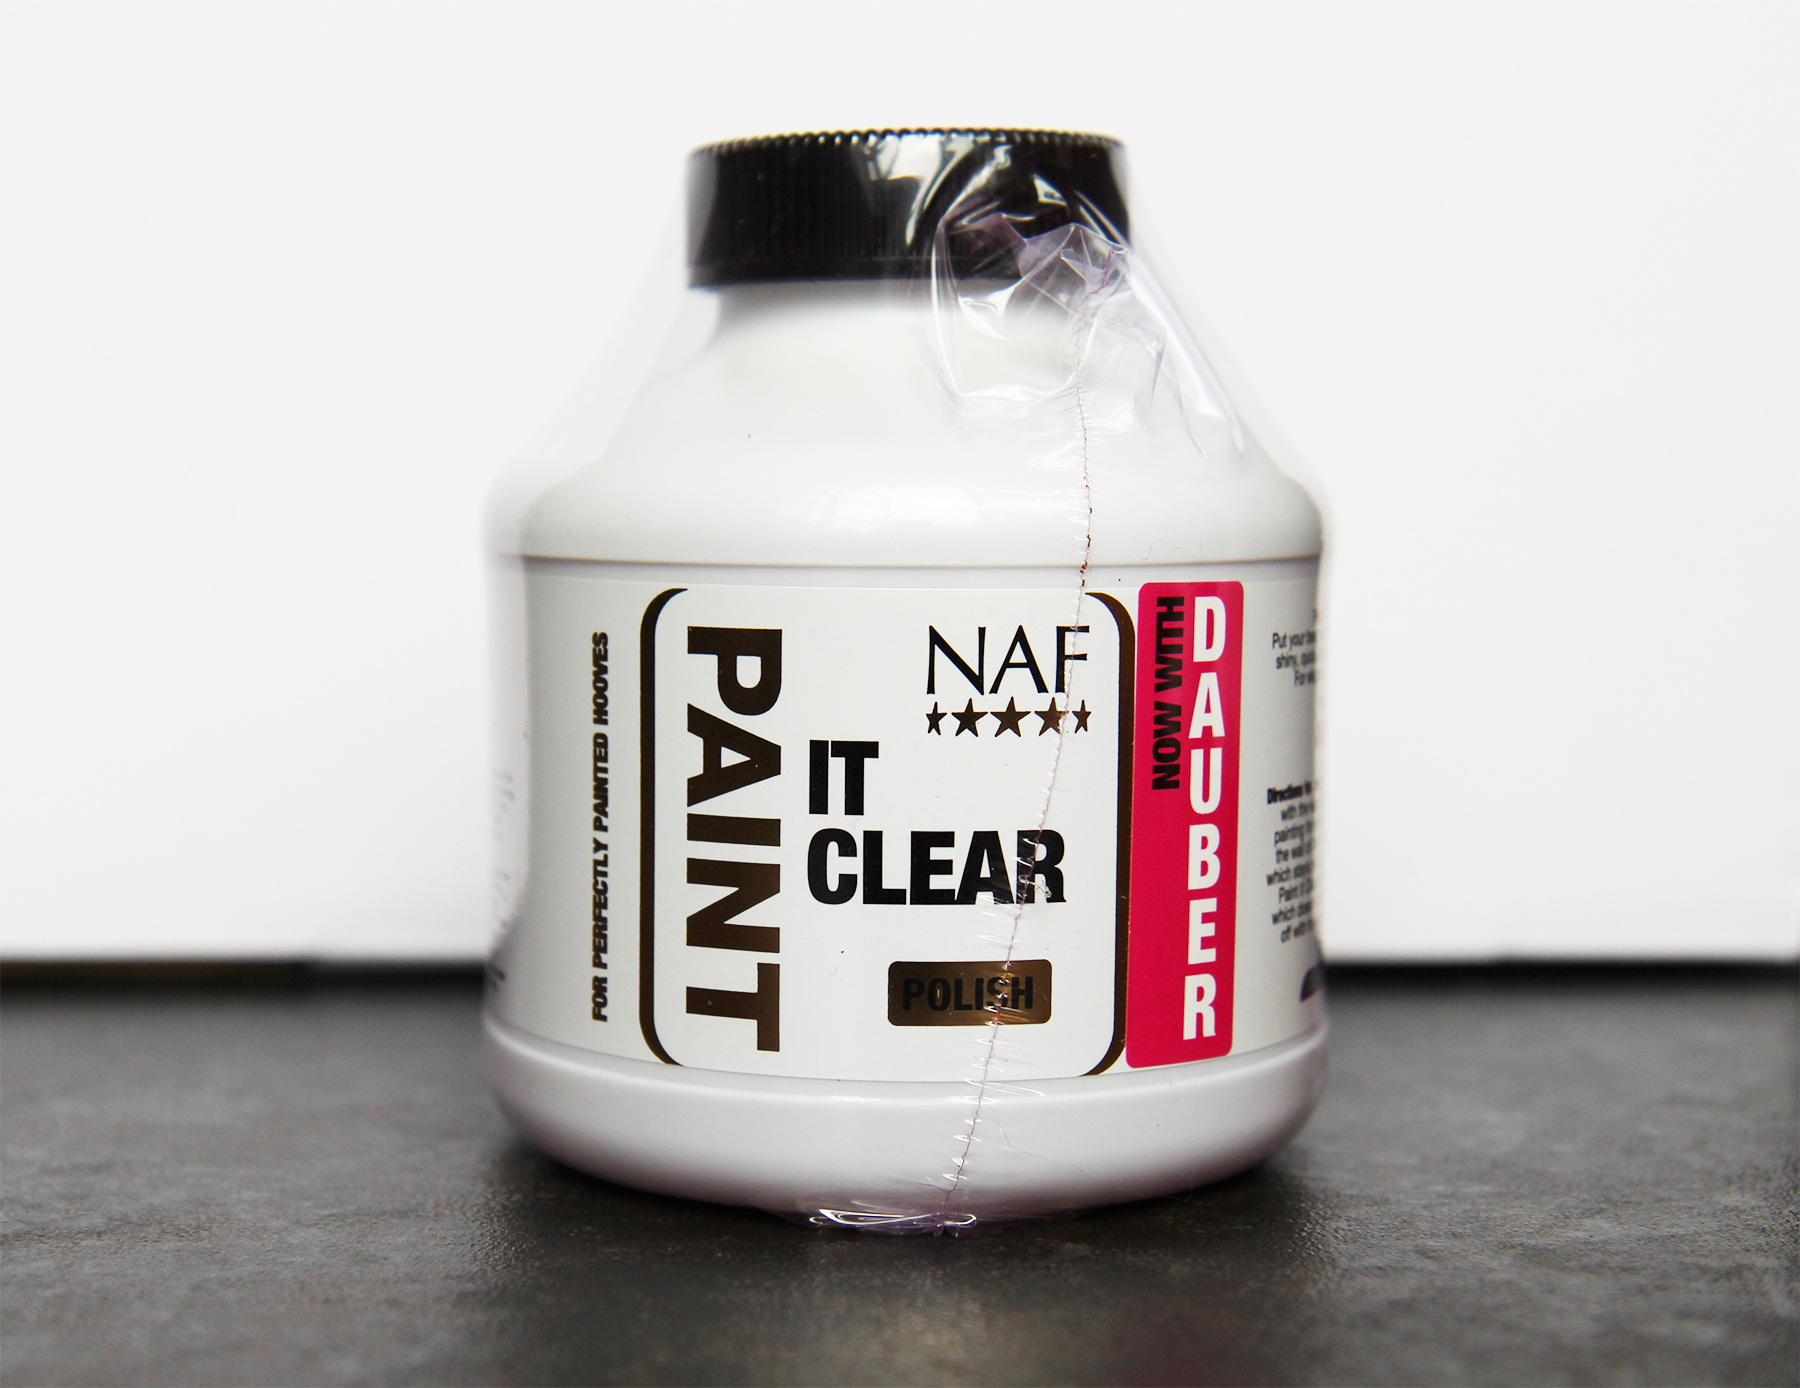 NAF paint it clear